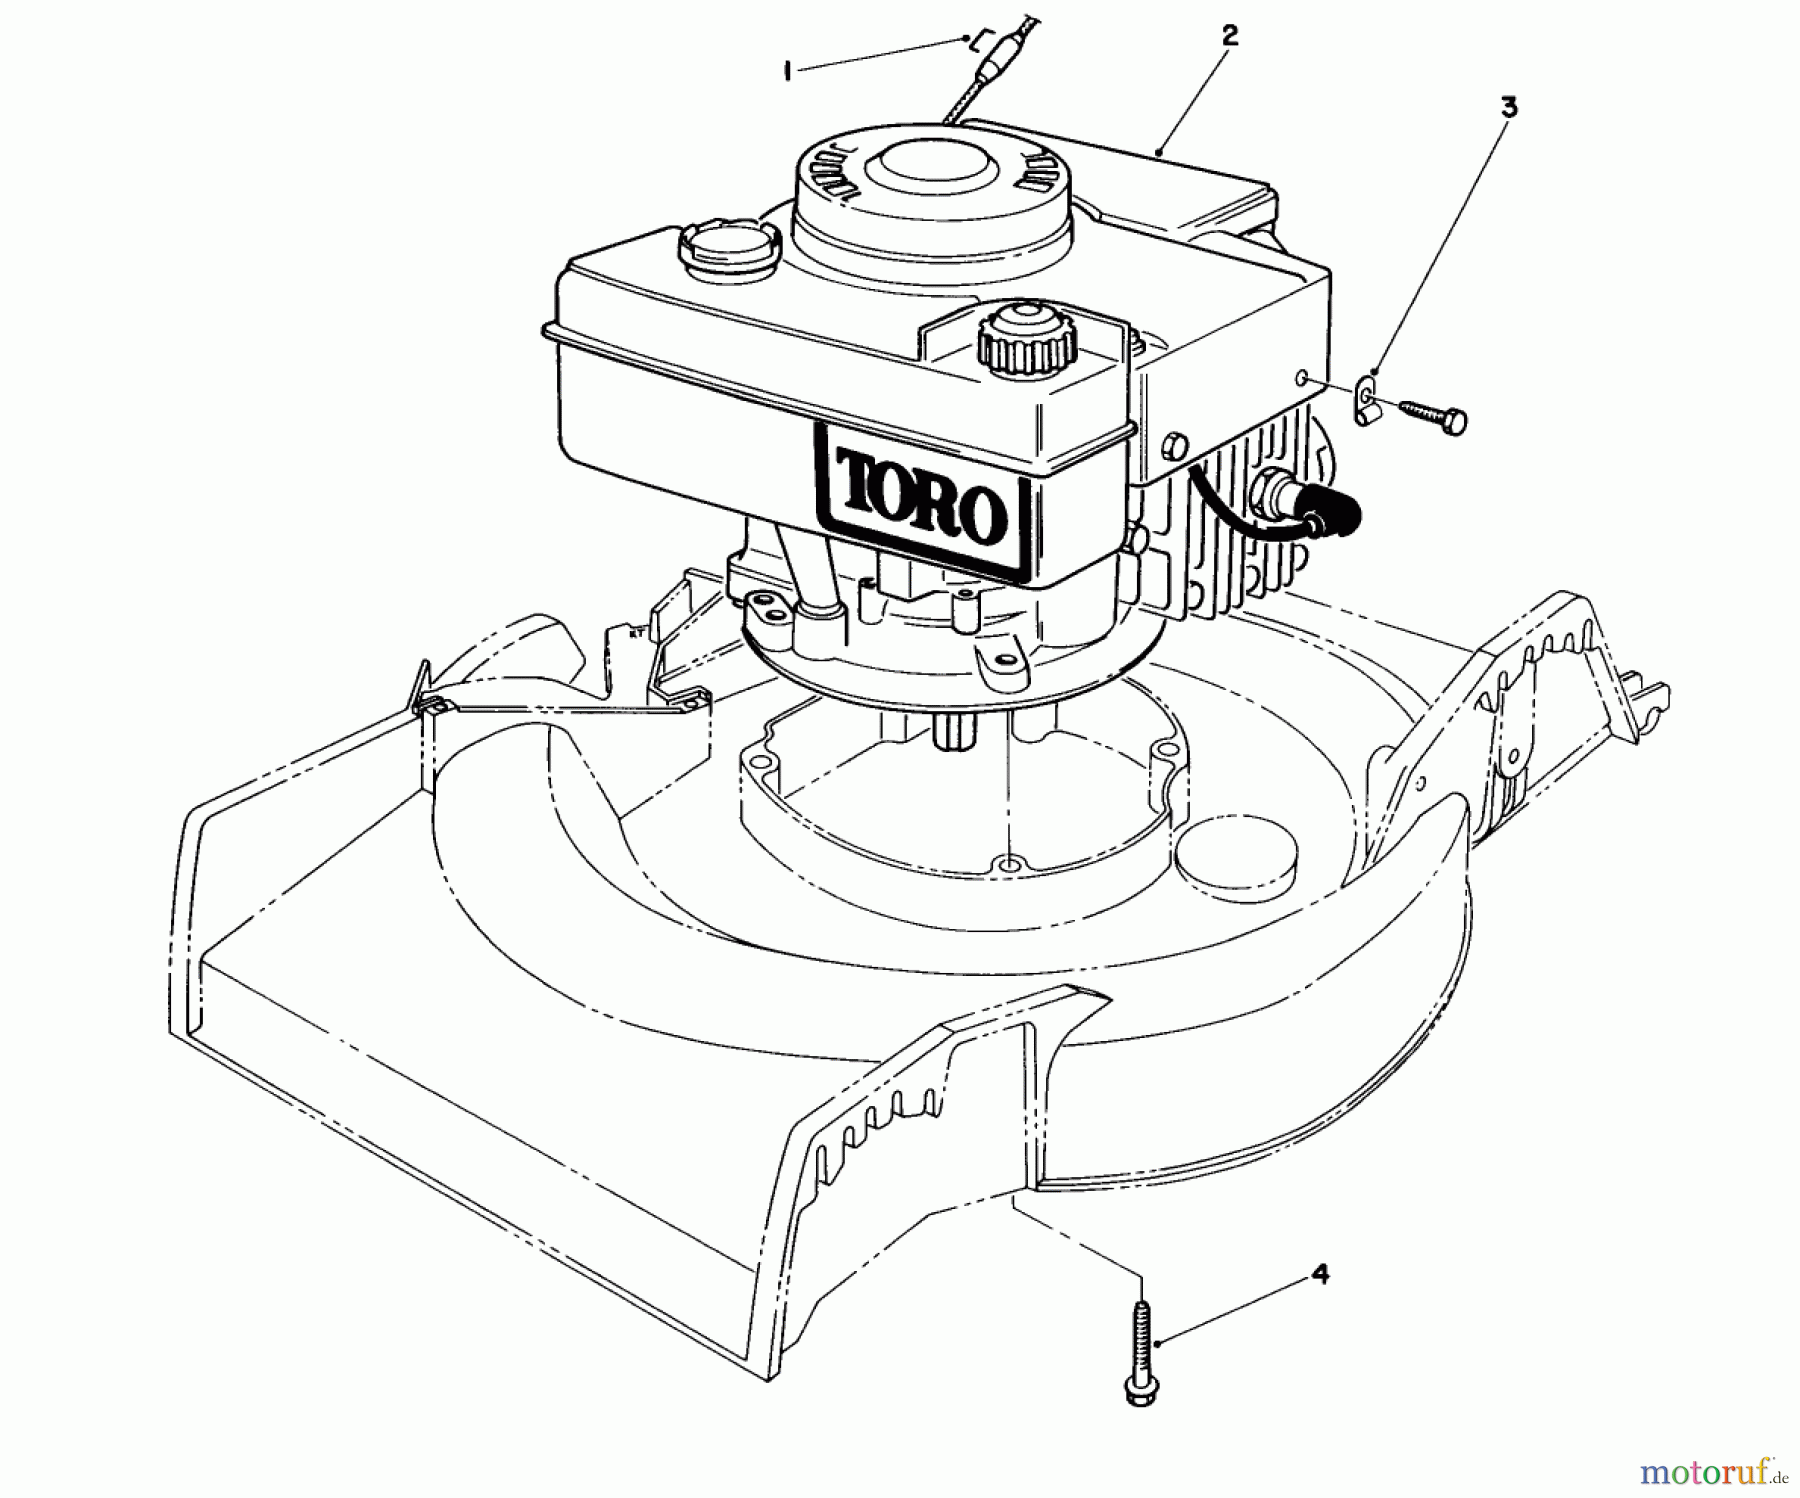  Toro Neu Mowers, Walk-Behind Seite 1 16575 - Toro Lawnmower, 1988 (8012679-8999999) ENGINE ASSEMBLY